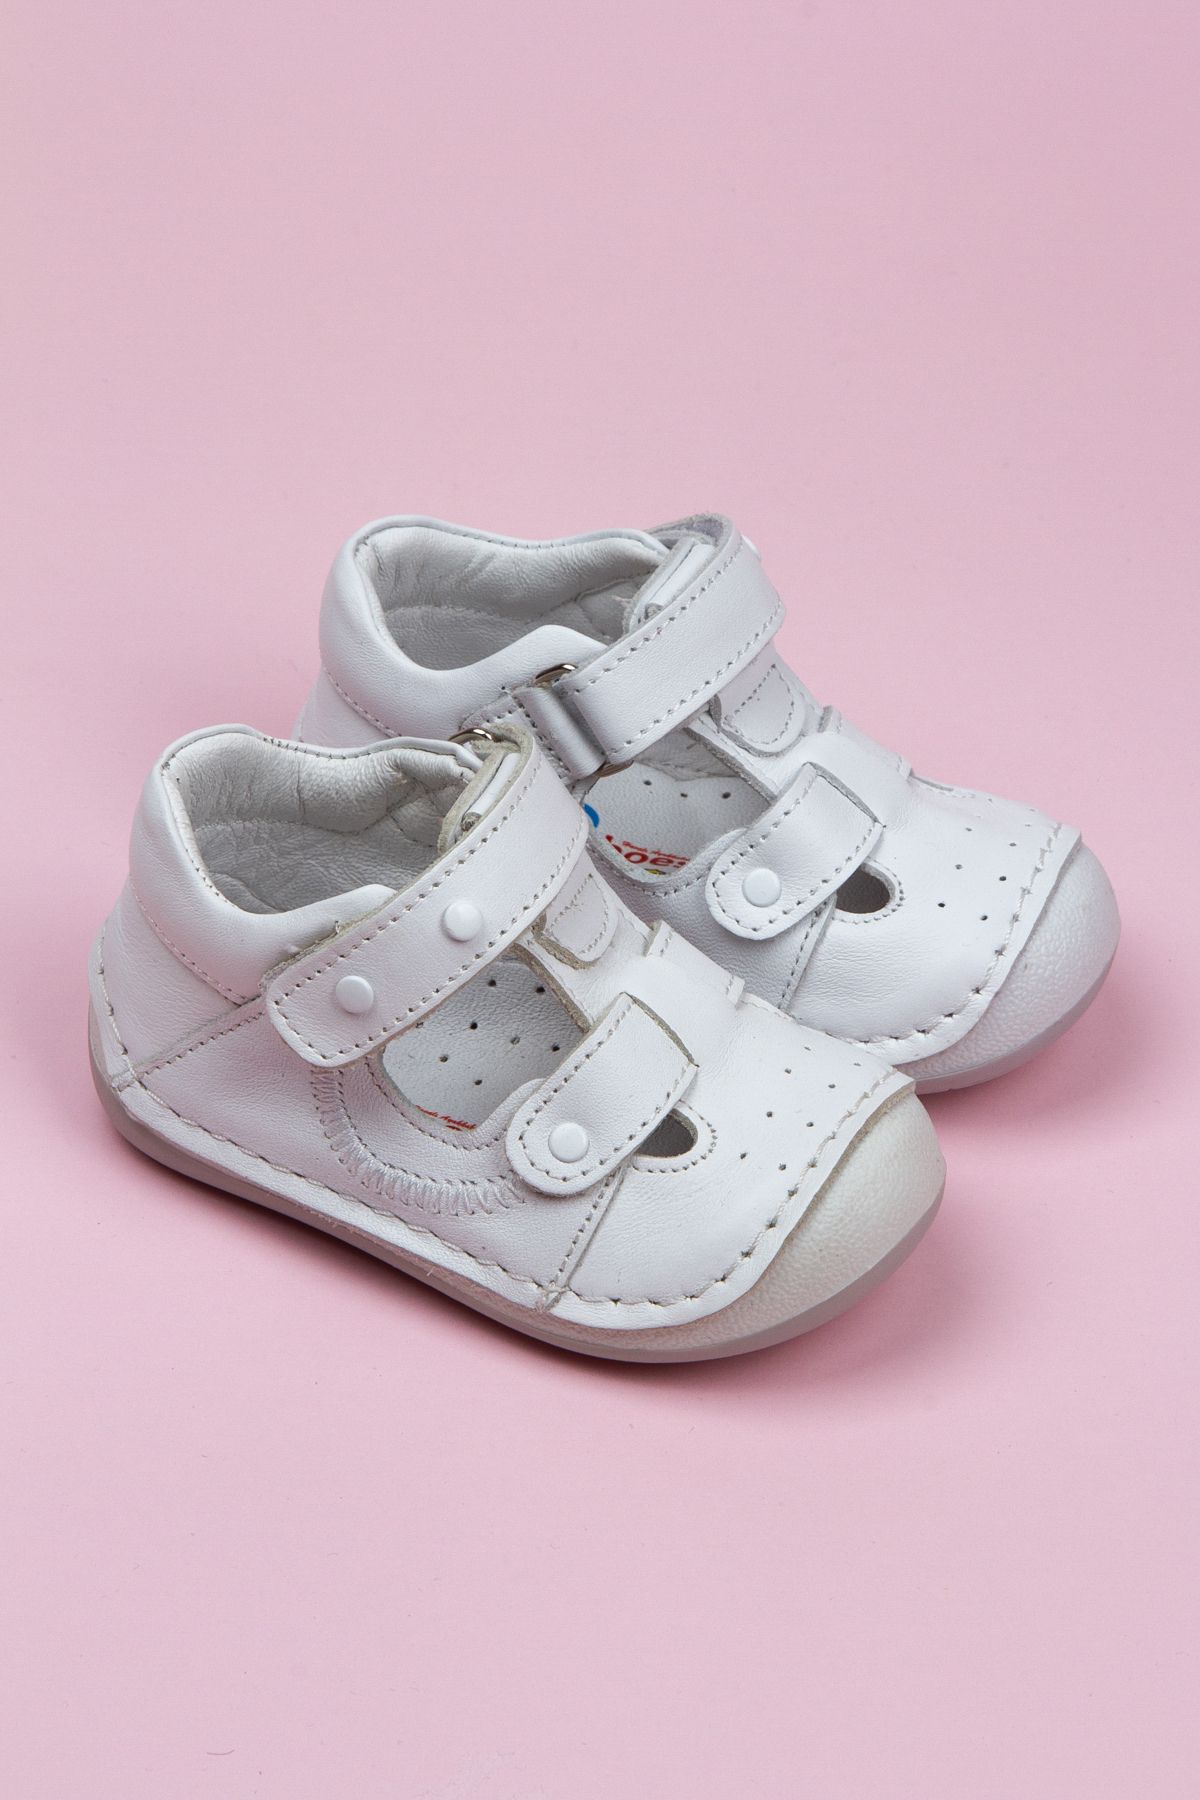 Windy Shoes Hakiki Deri Oscar Luca Krem Beyaz Ortopedik  Bebek Çocuk Sneaker Yürüyüş Ayakkabısı